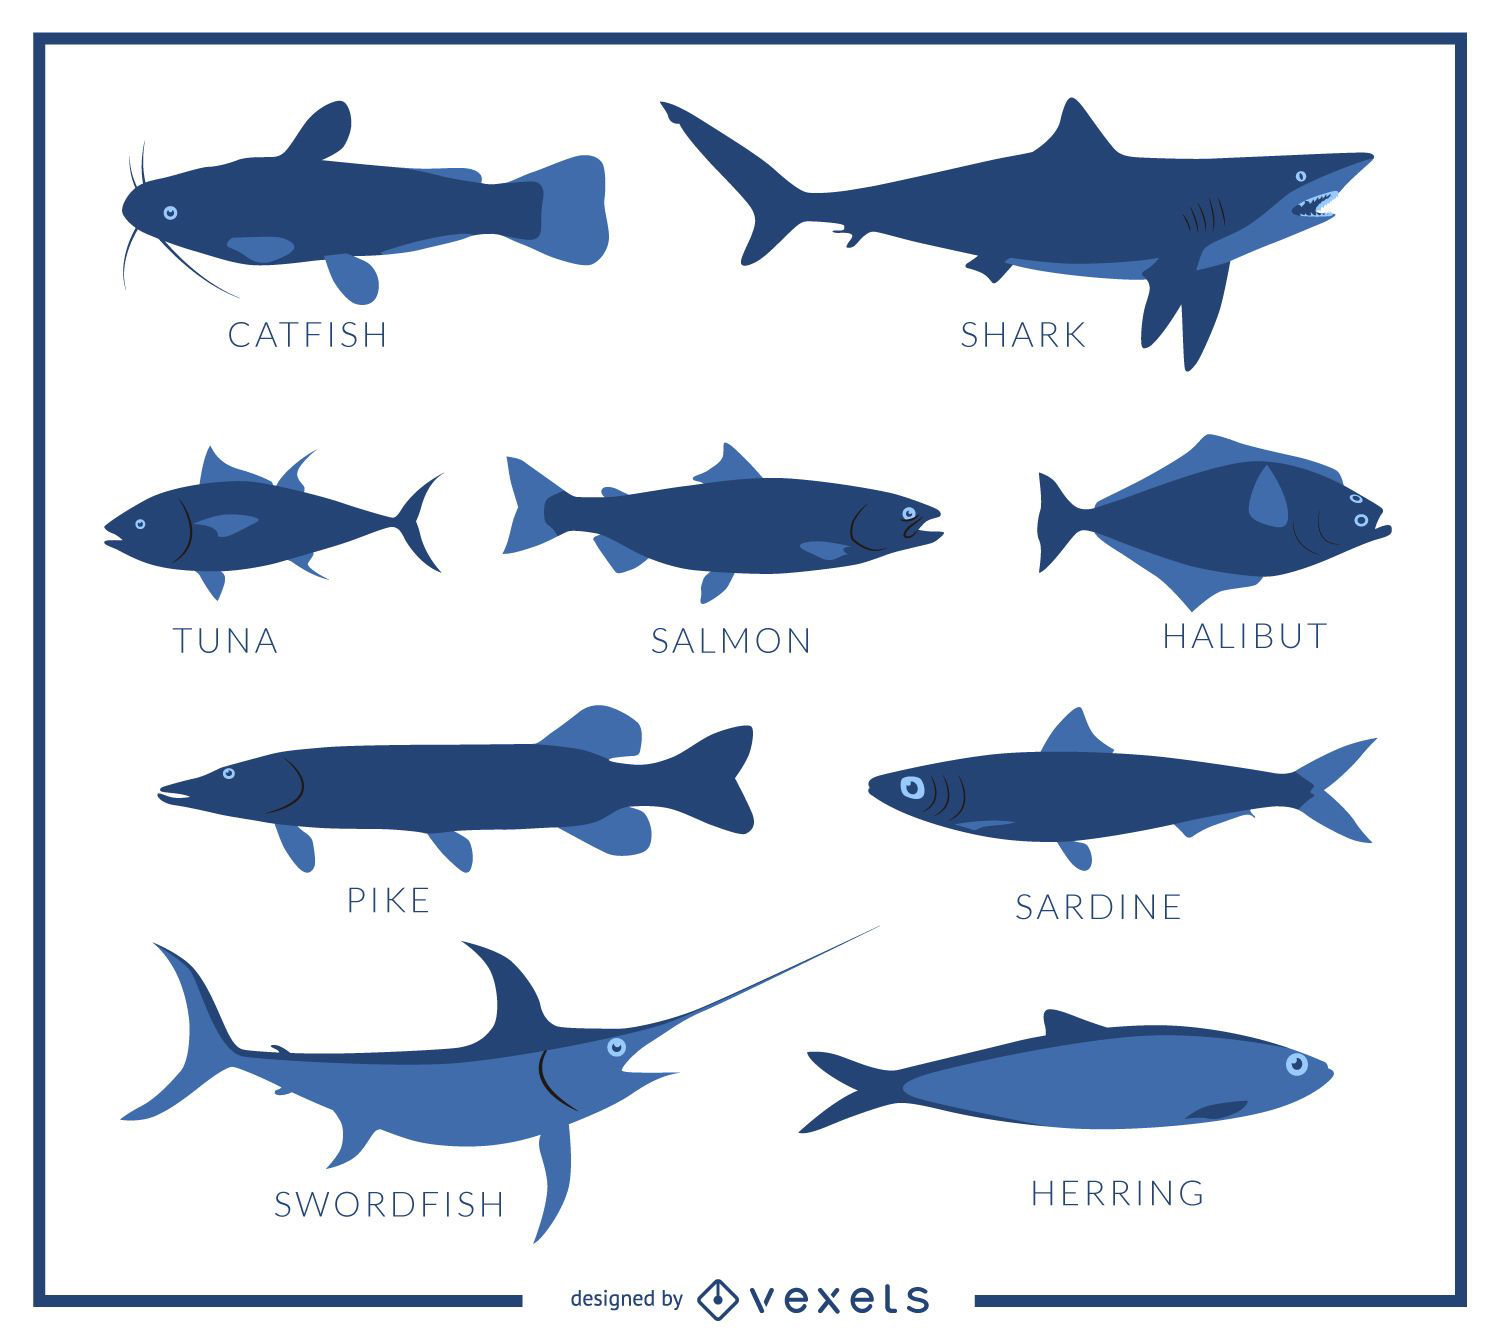 Abbildung der Fischarten